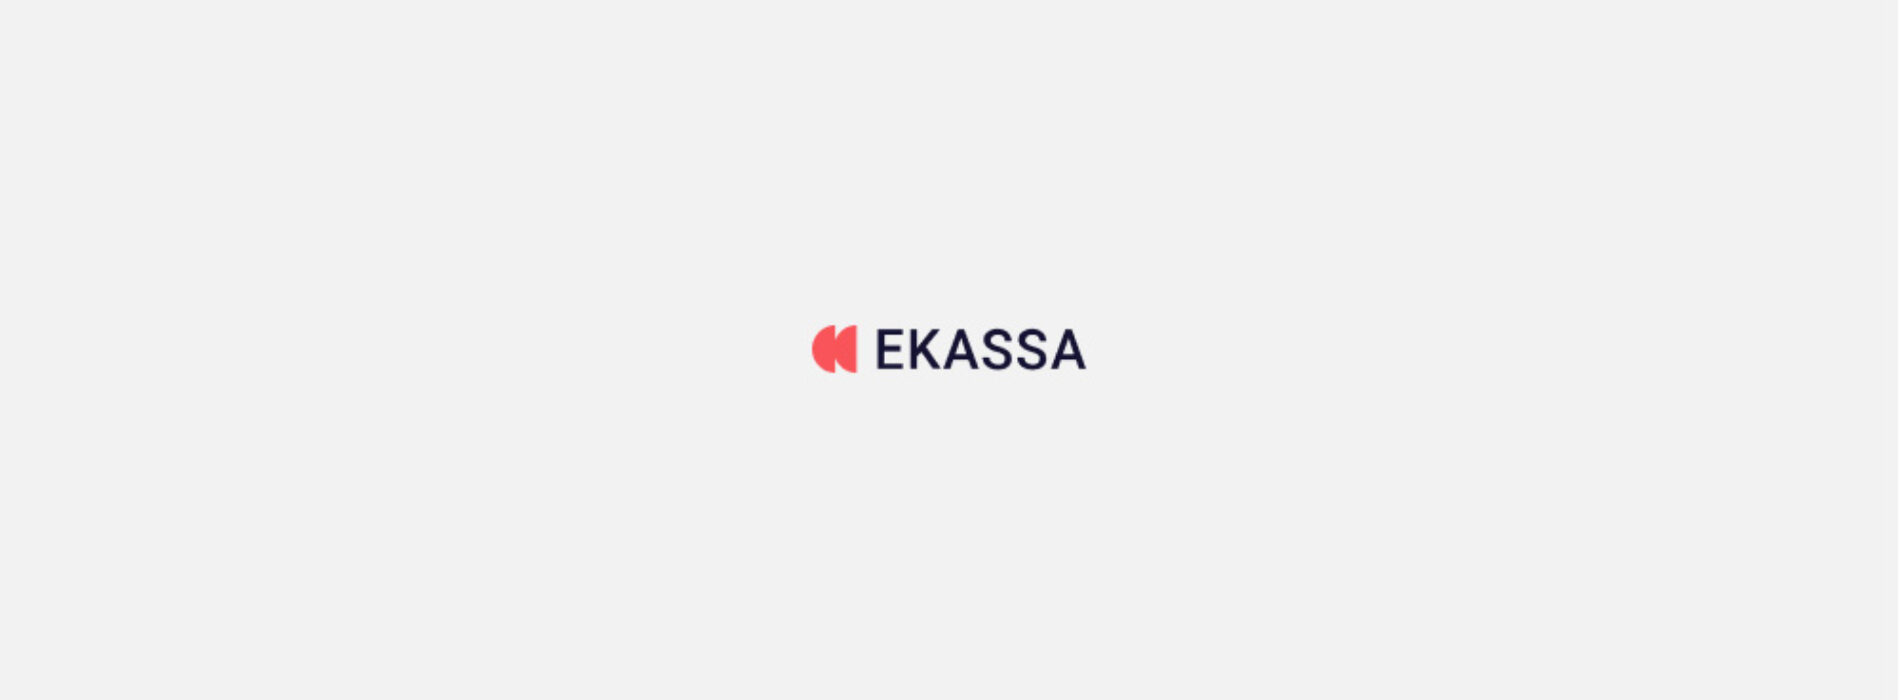 Ekassa – sprawdziliśmy ofertę i opinie klientów